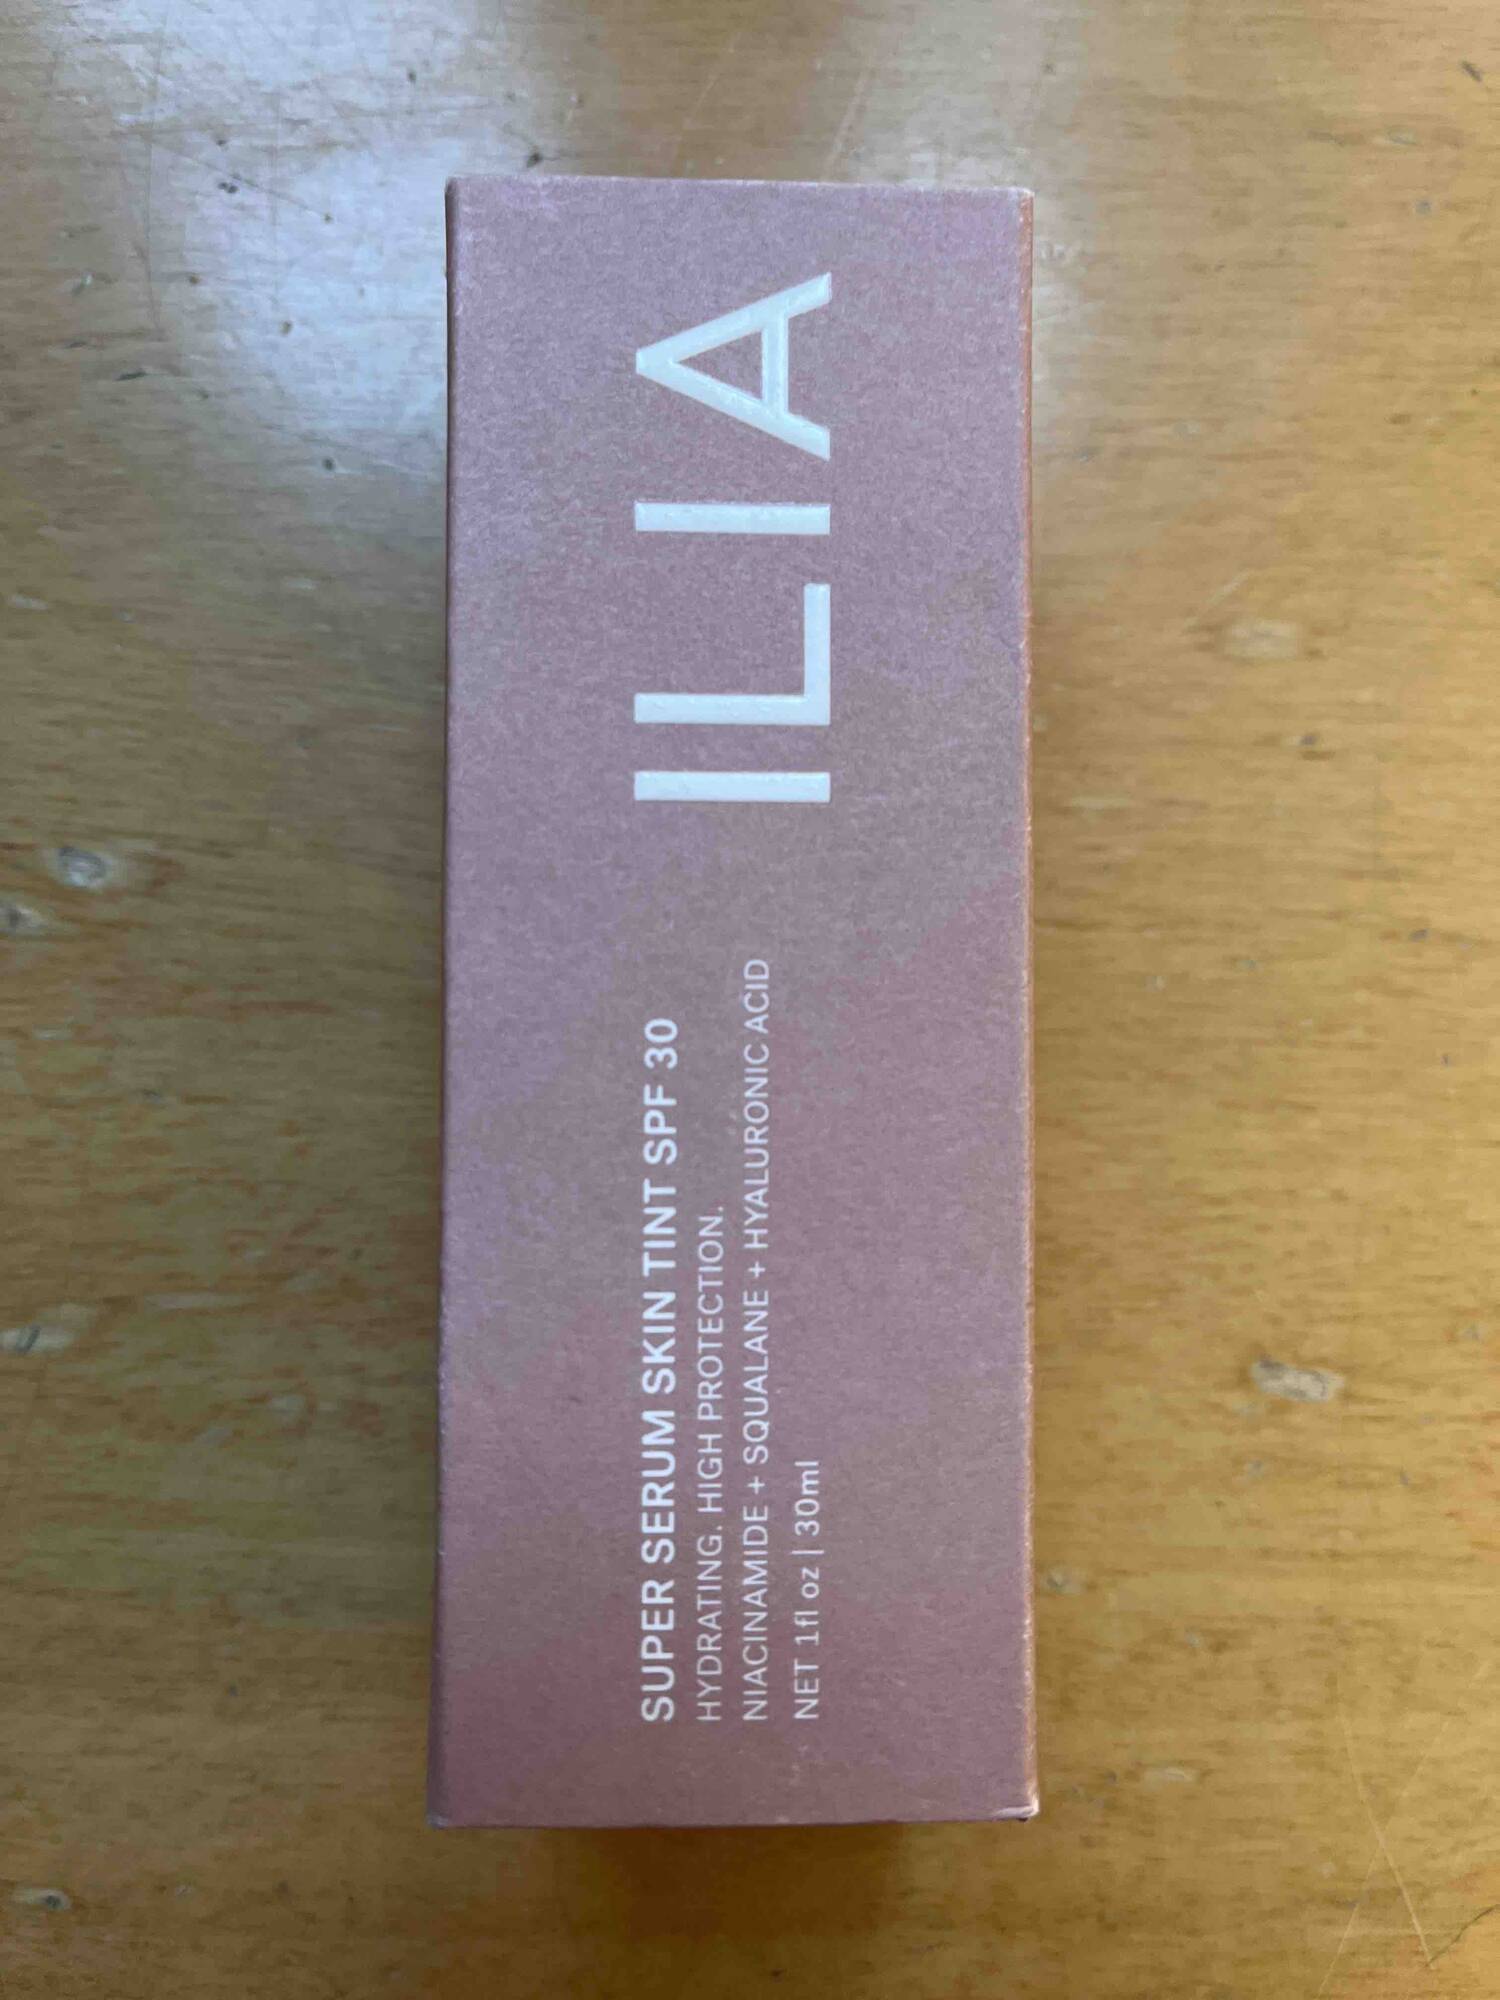 ILIA - Super serum skin tint SPF 30